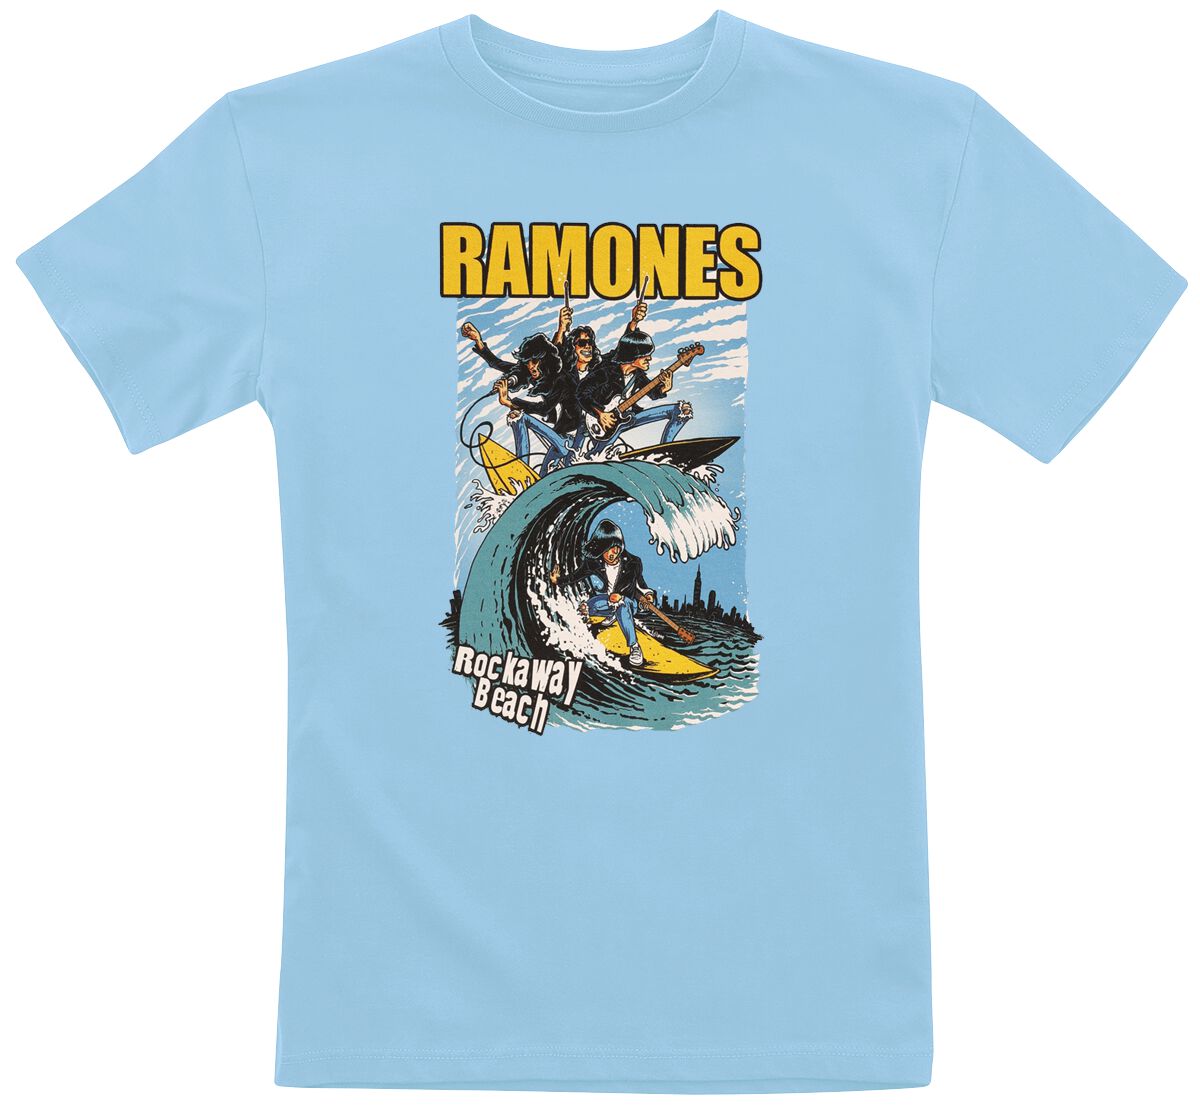 Ramones T-Shirt für Kleinkinder - Kids - Rockaway Beach - für Mädchen & Jungen - blue  - Lizenziertes Merchandise!